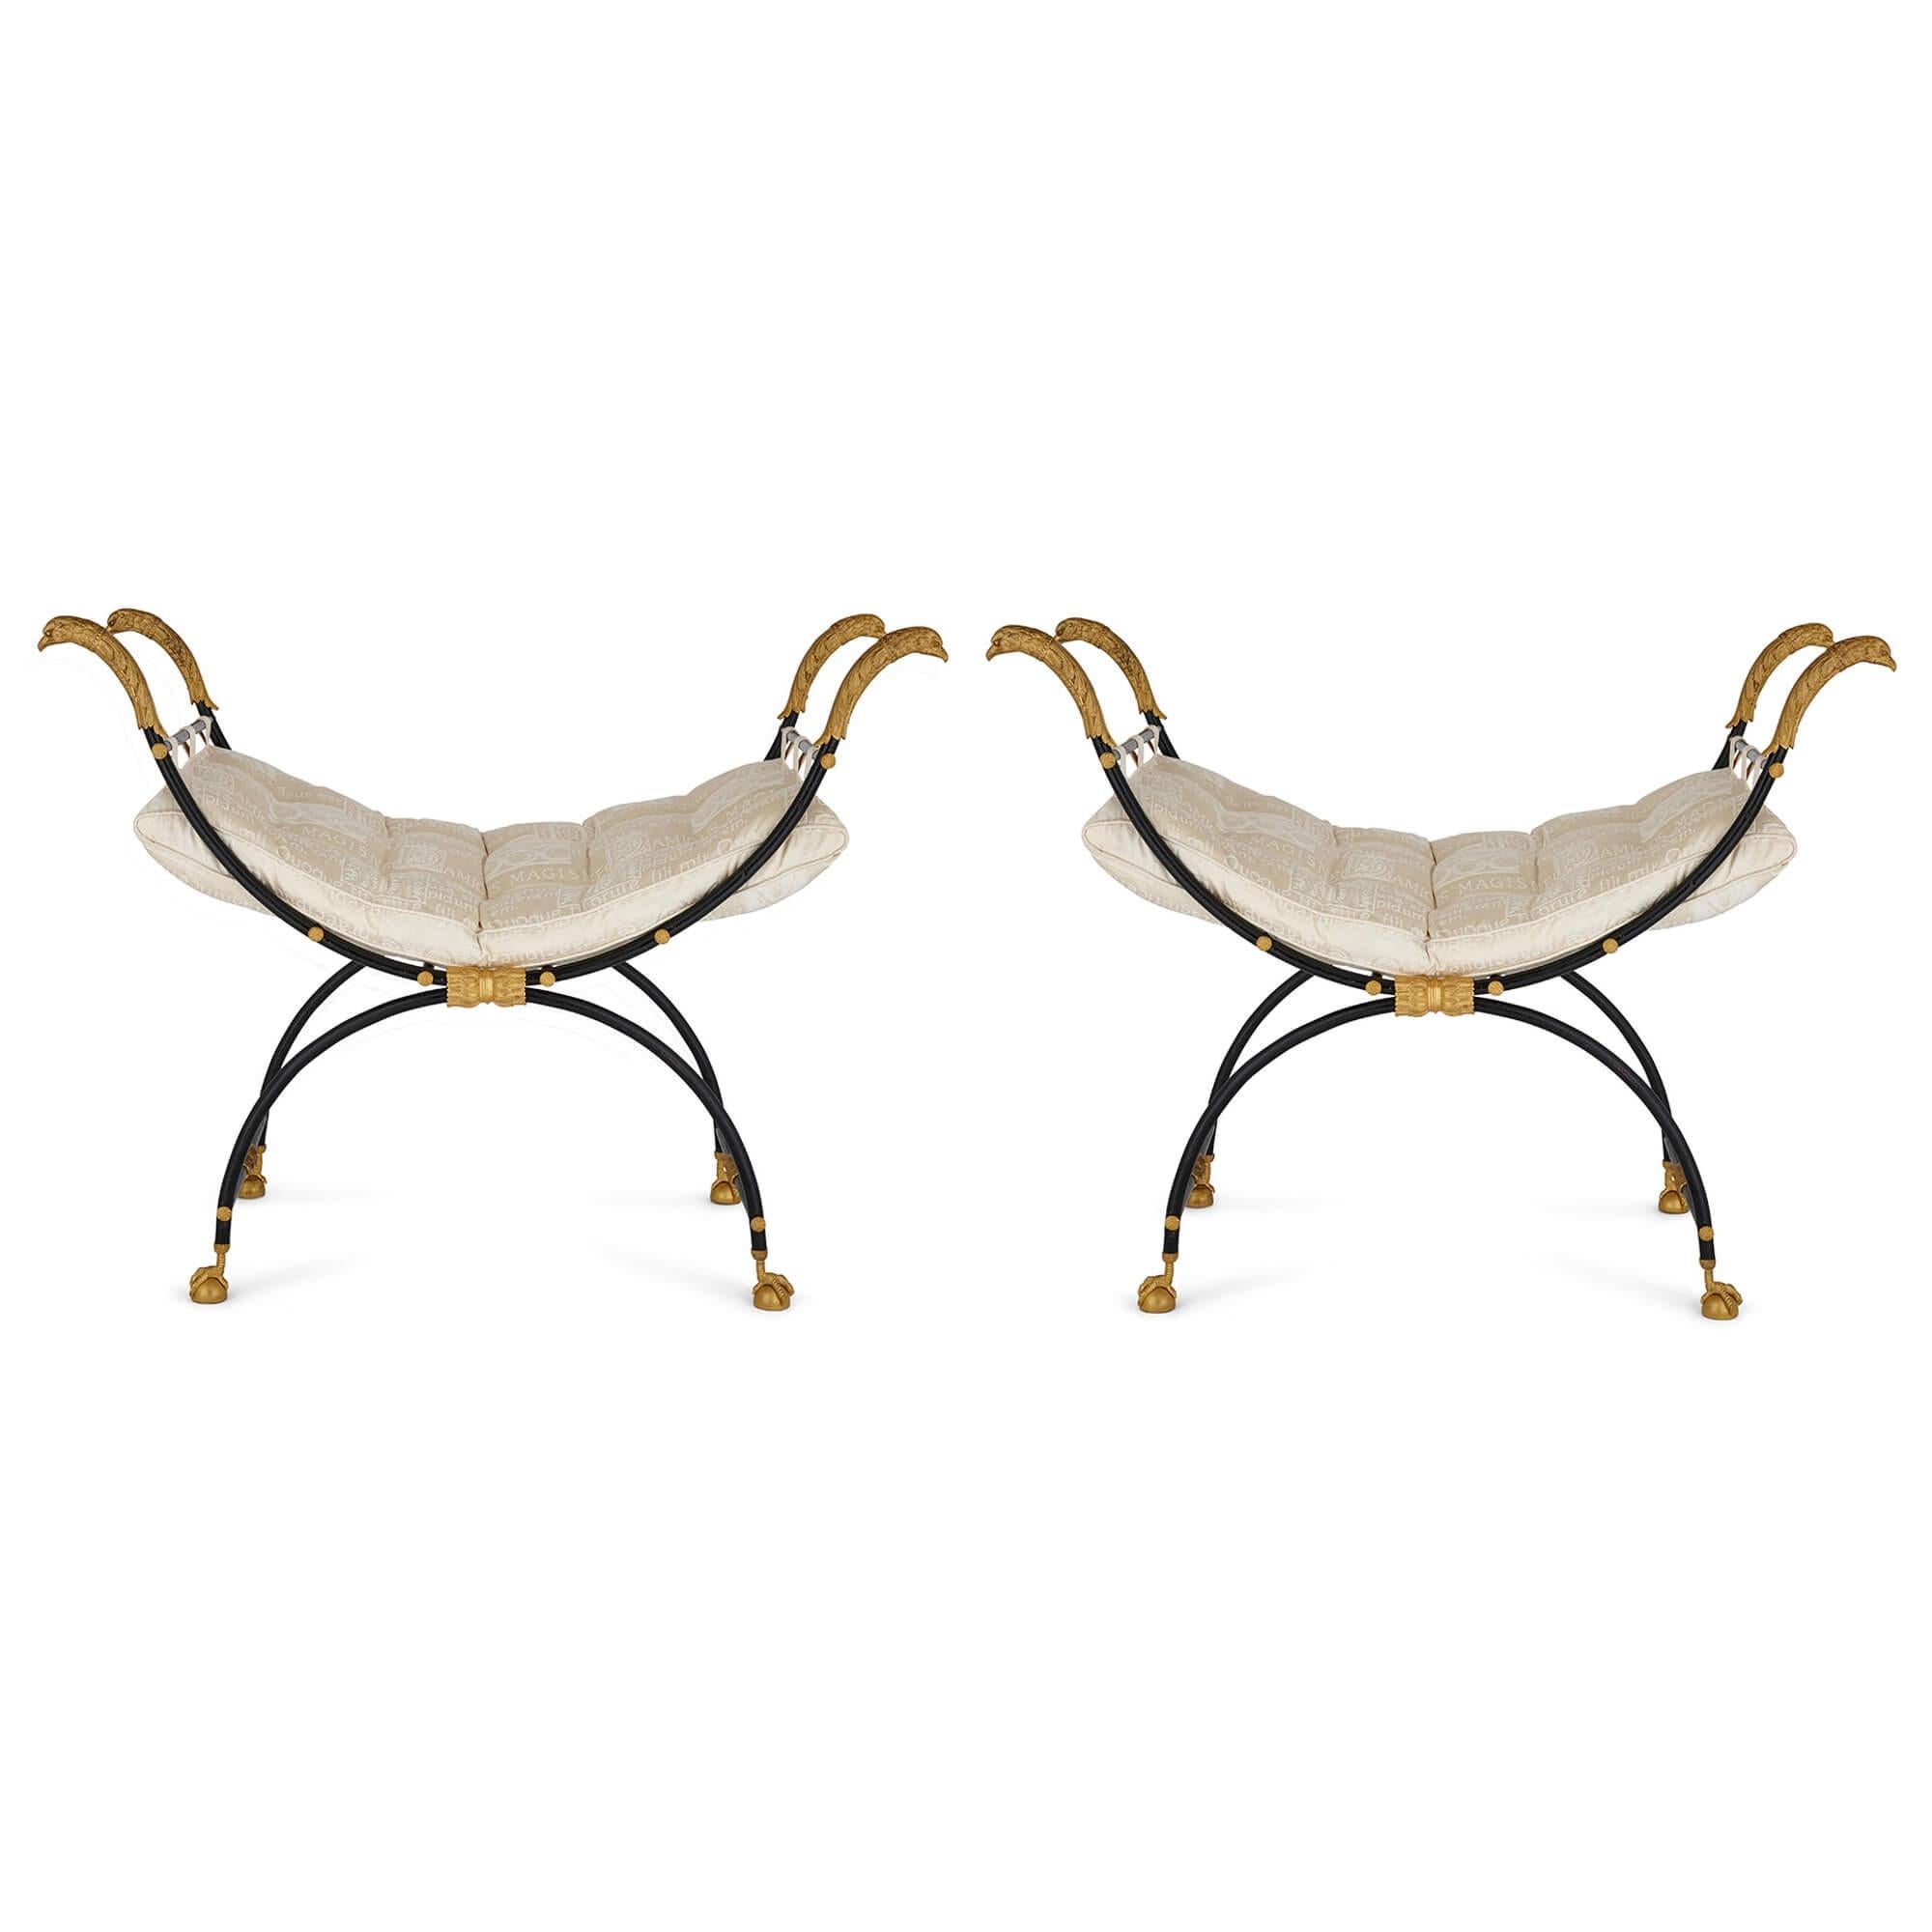 Ces magnifiques chaises curules, simples et sophistiquées, ont été exécutées dans le style Empire, combinant la majesté de la règle romaine avec la France impériale napoléonienne. Longtemps symbole de domination et de pouvoir, les chaises curules